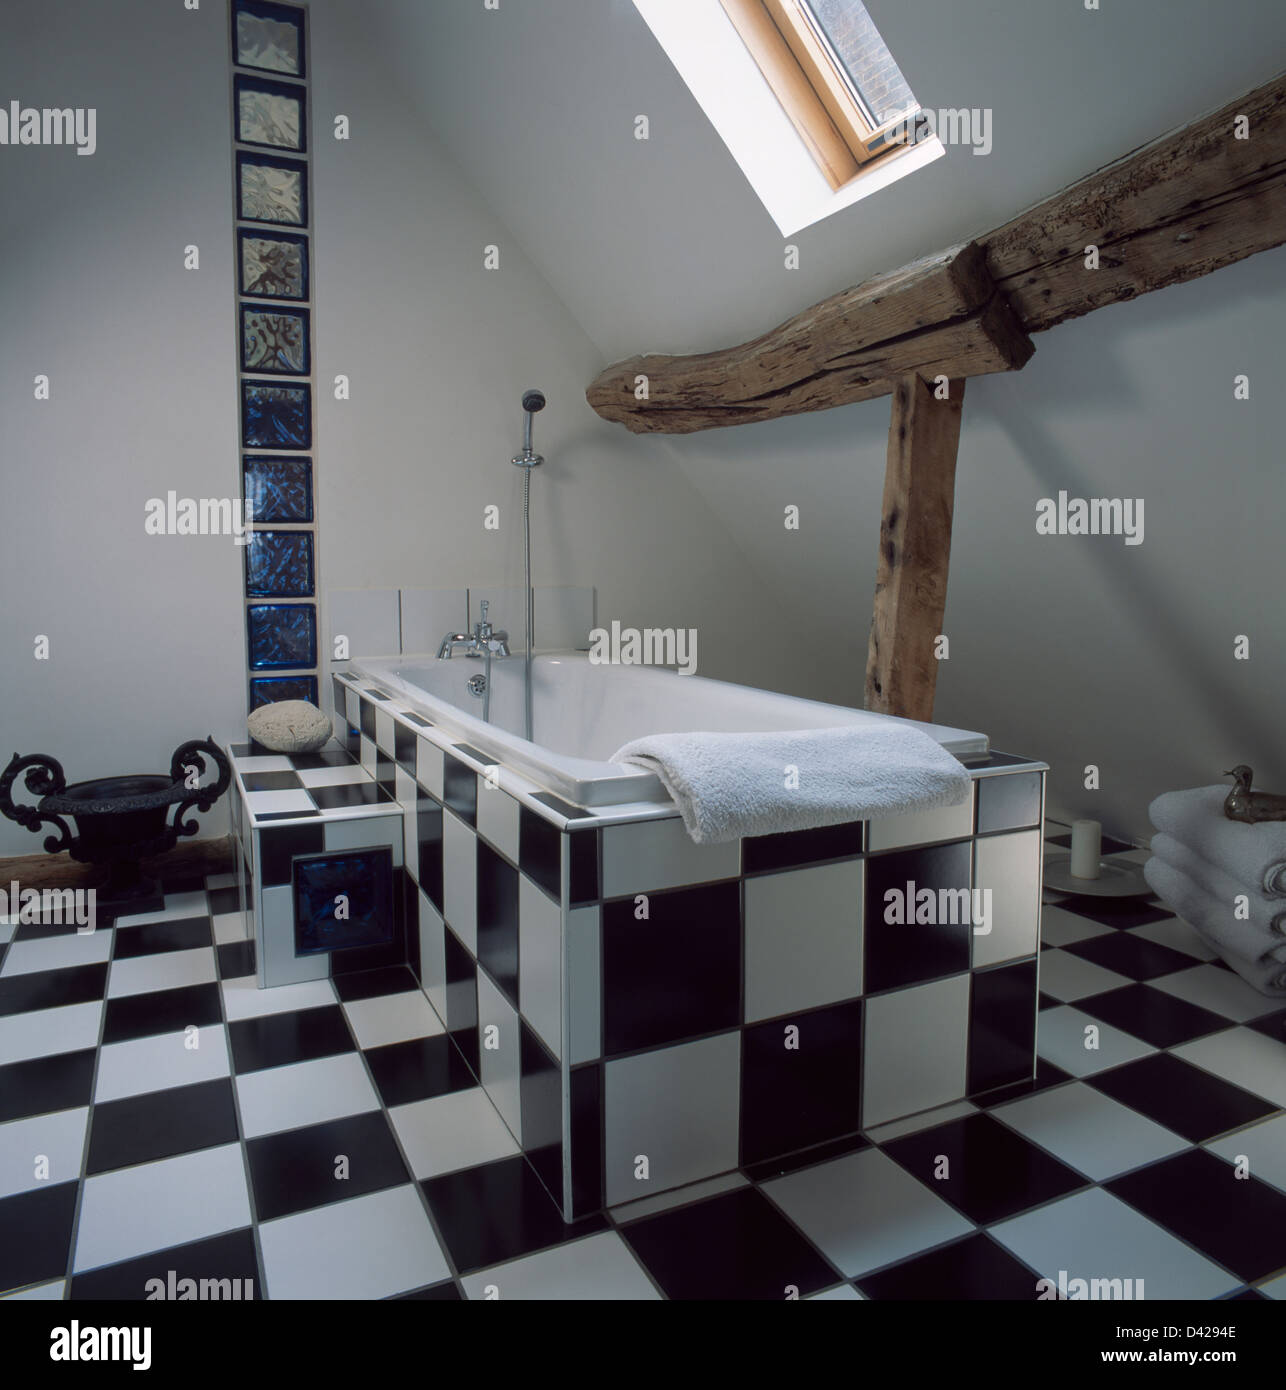 Schwarz / weiß Fliesen Boden und Bad-Panel im Dachgeschoss Badezimmer mit  rustikalen Holzbalken Stockfotografie - Alamy